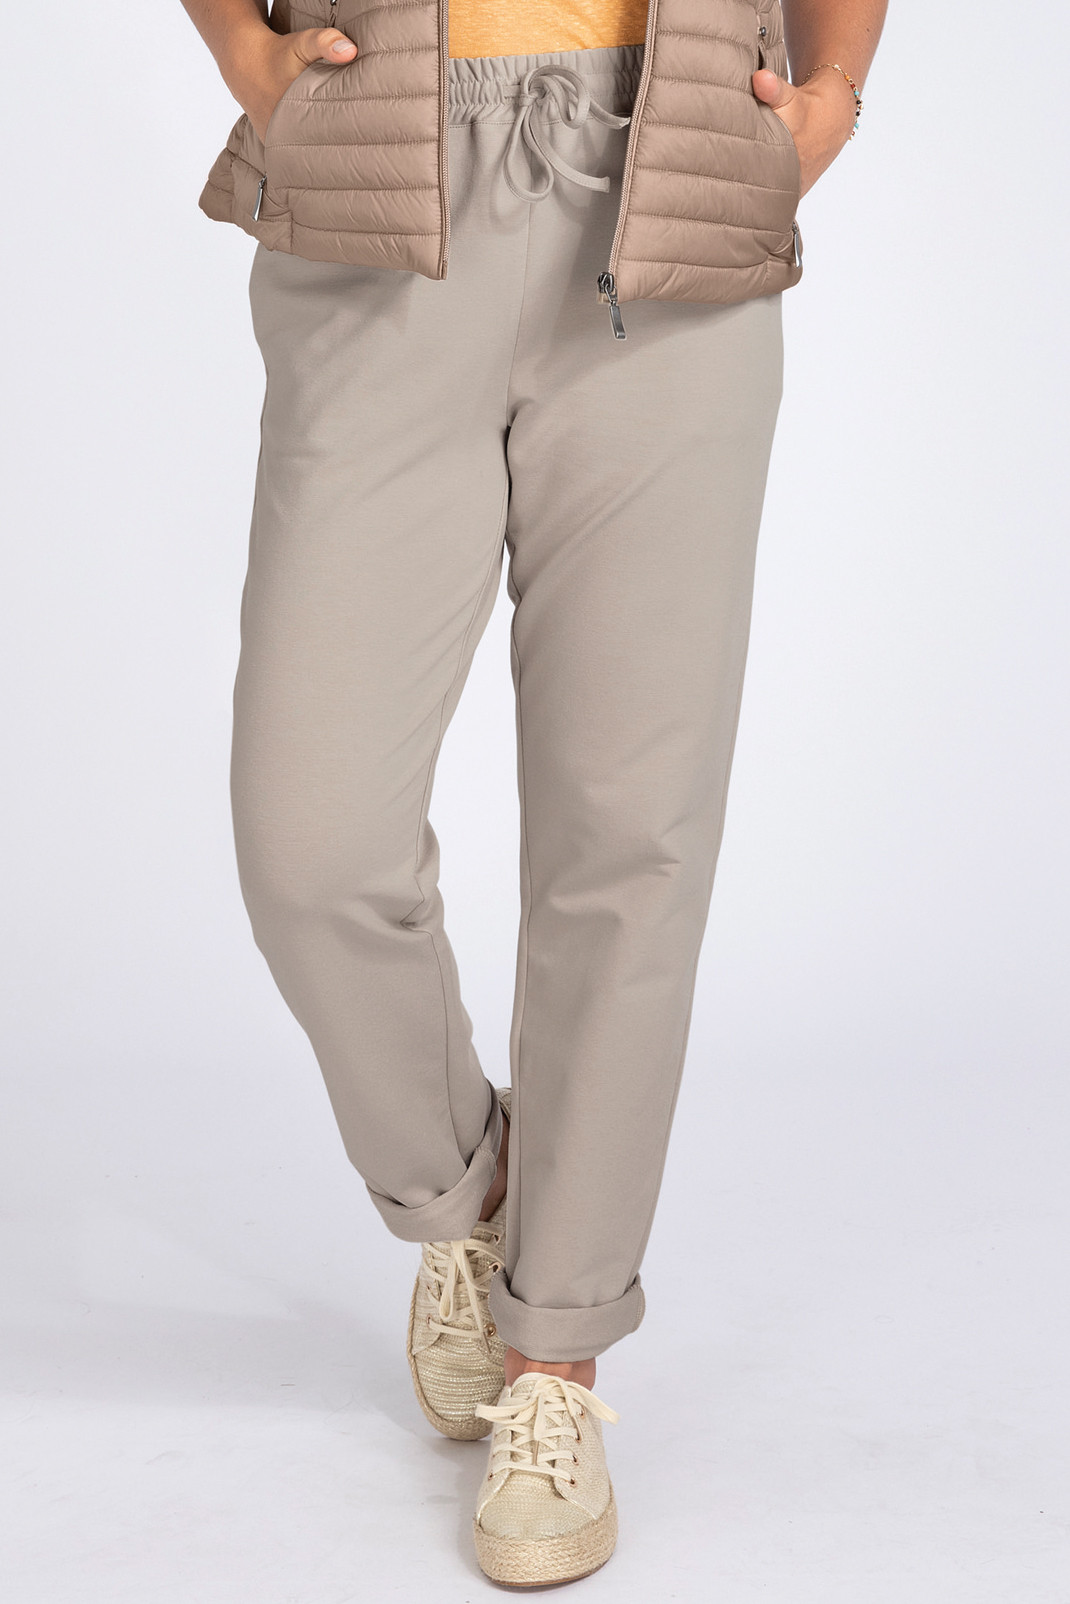 Pantalon molleton femme en coton b.solfin - fabriqué en france - 92% coton  / 8% elasthane blanc creme B. Solfin